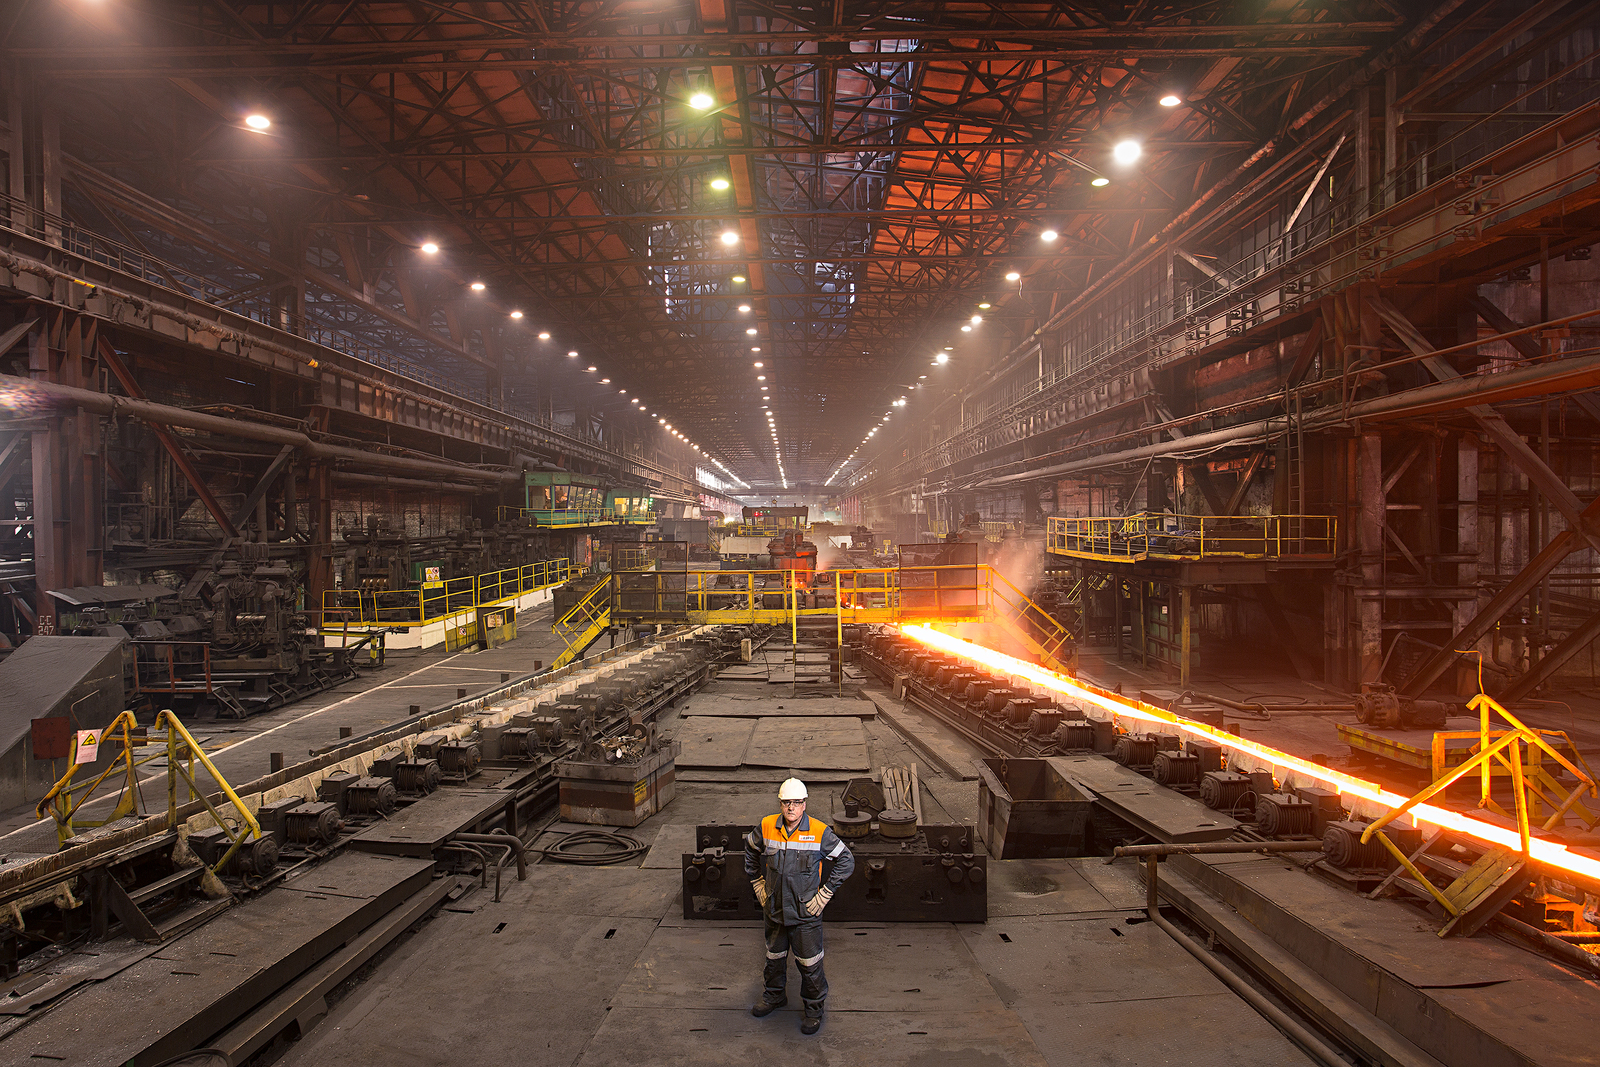 stal - В США завод по производству аккумуляторов на возобновляемых источниках построят на месте сталелитейного завода